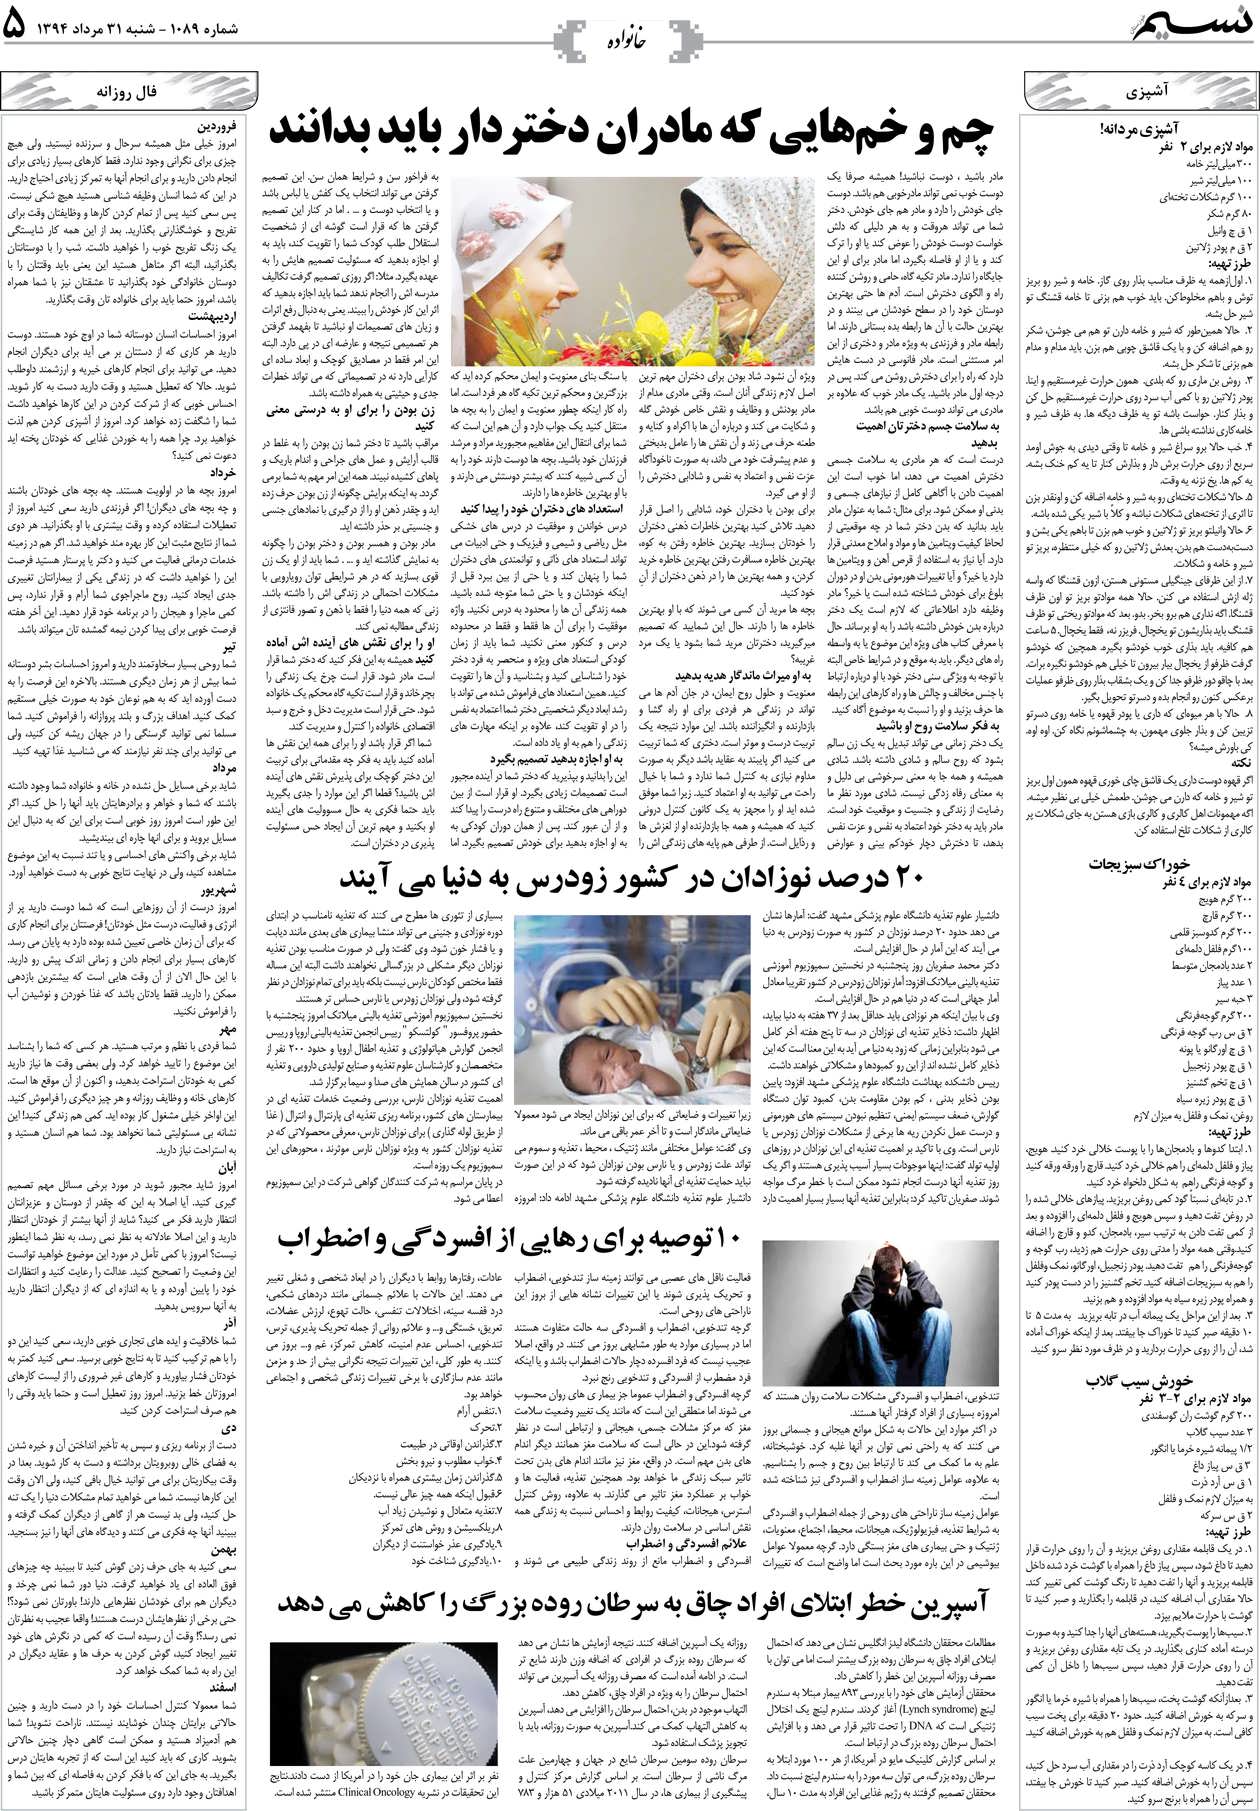 صفحه خانواده روزنامه نسیم شماره 1089